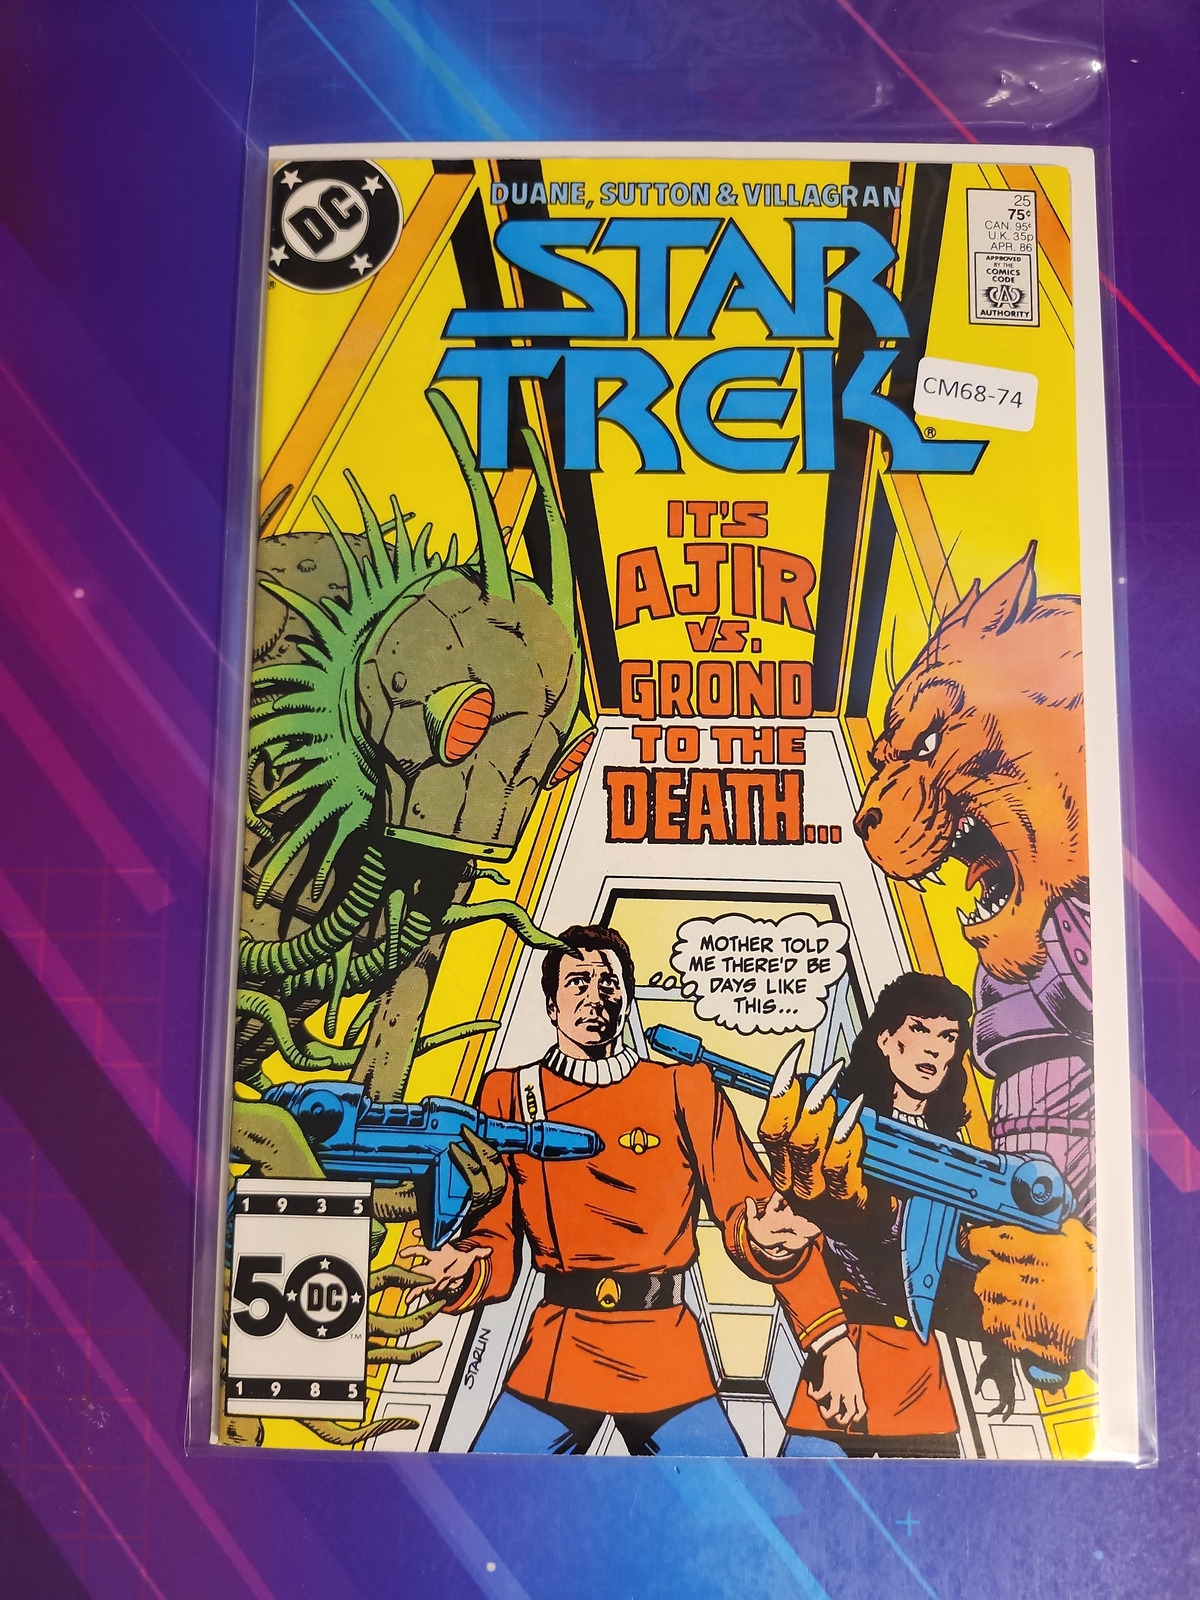 STAR TREK #25 VOL. 3 HIGH GRADE DC COMIC BOOK CM68-74